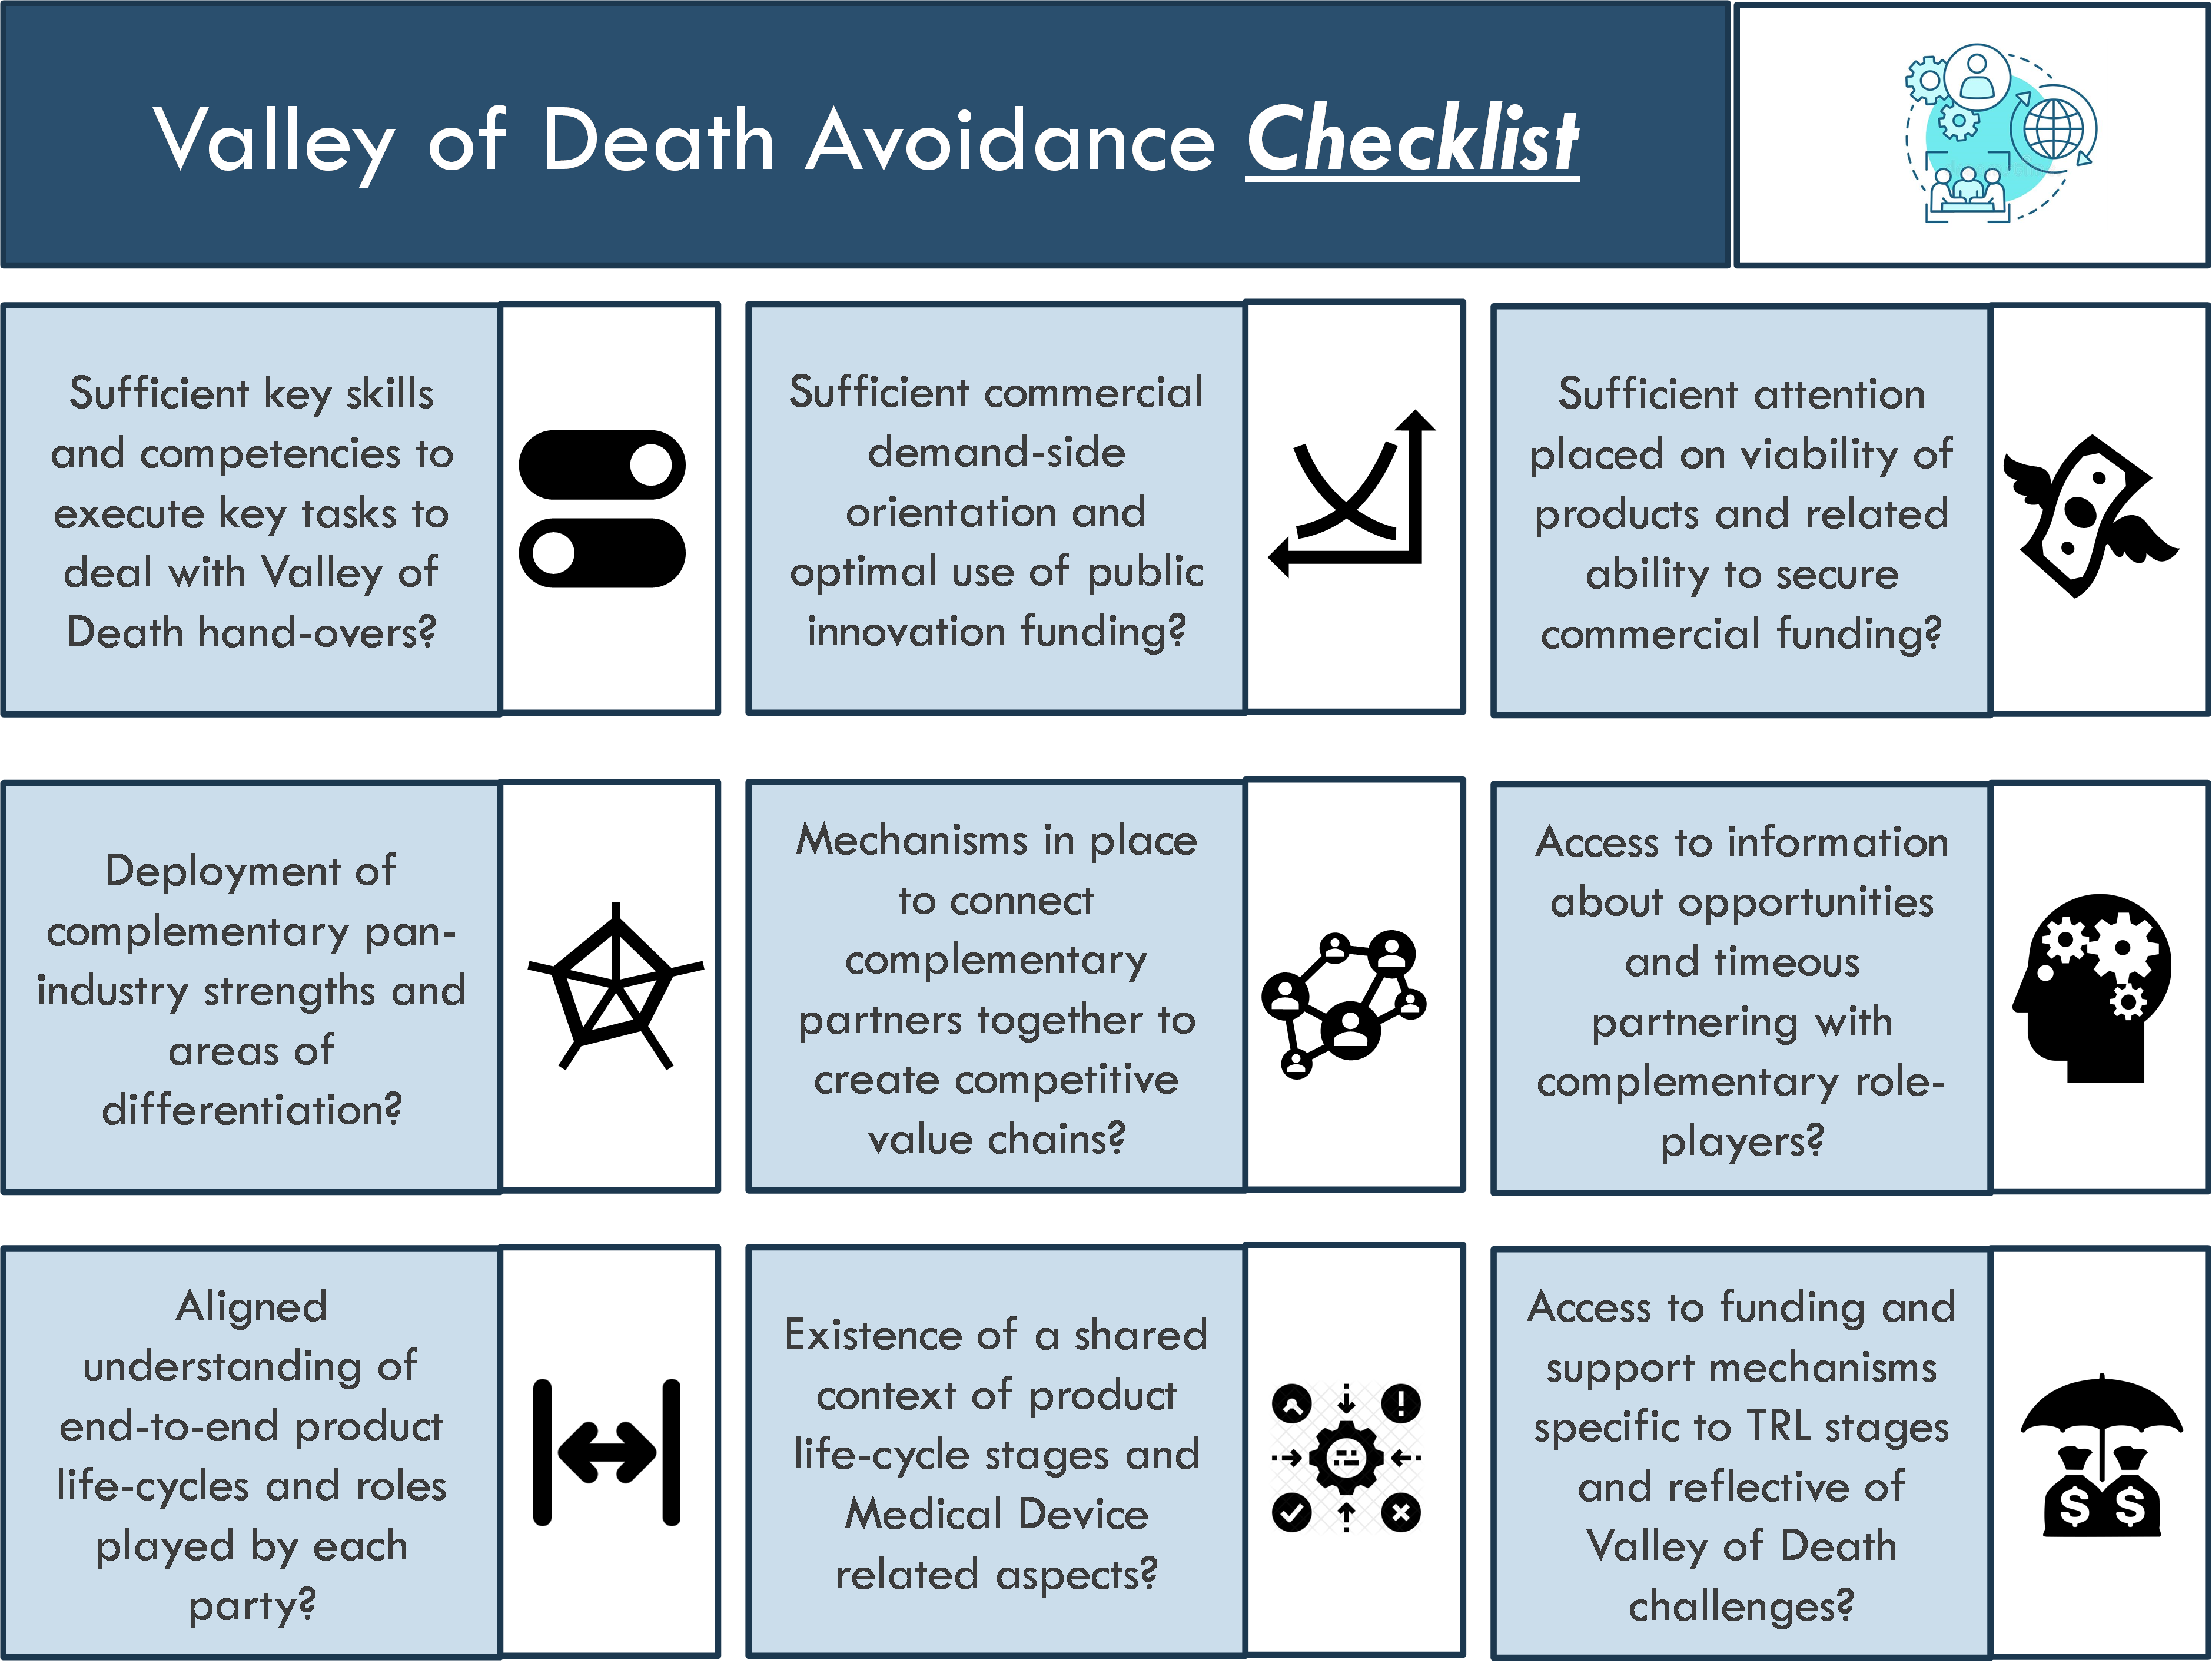 Figure 4: Valley of Death Avoidance Checklist